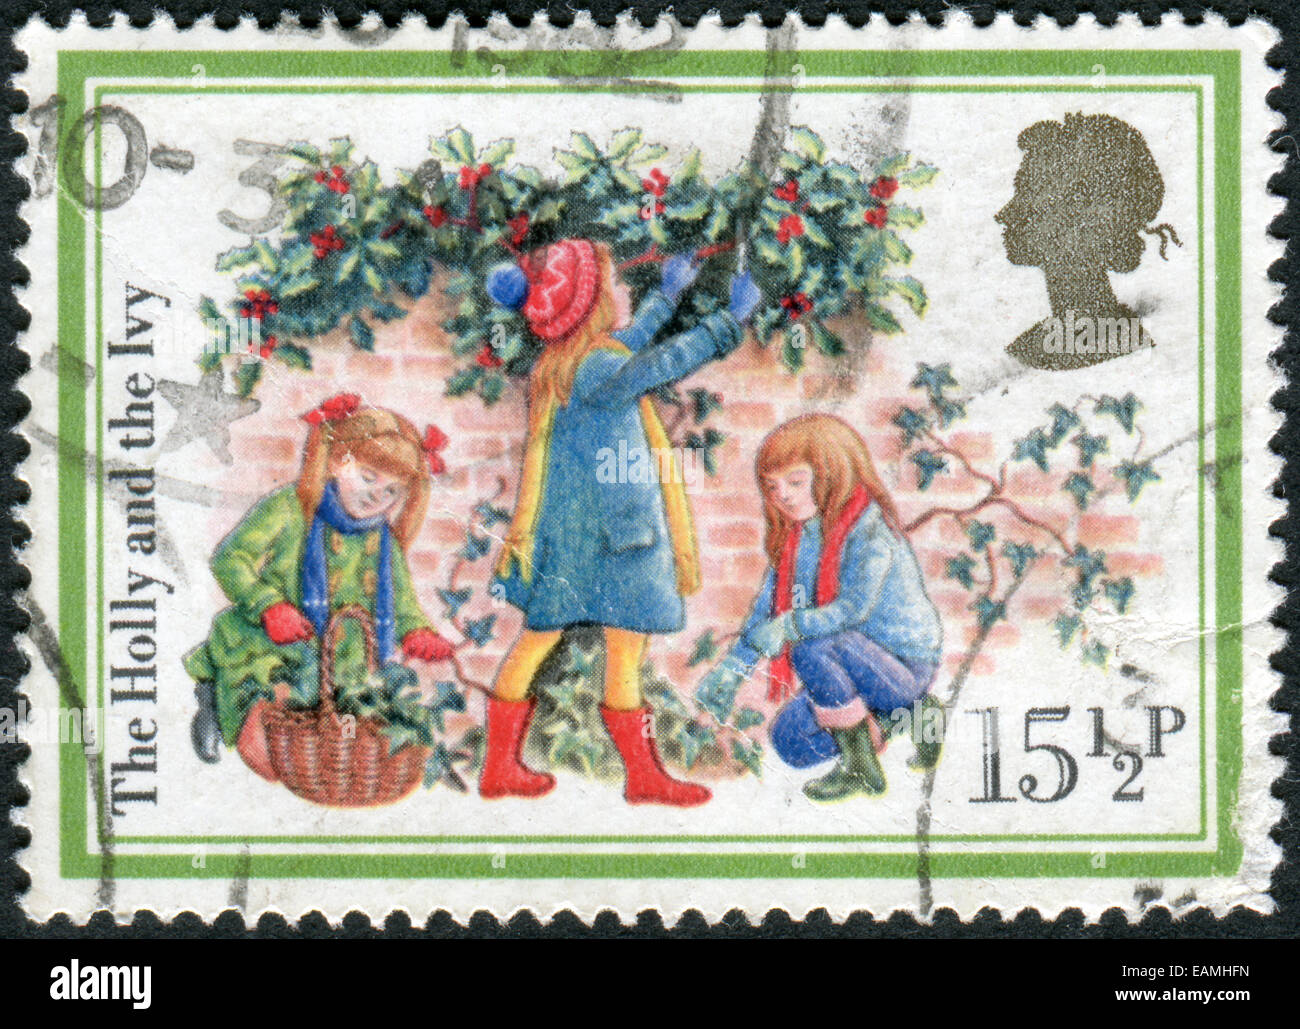 Vereinigtes Königreich - CIRCA 1982: Briefmarke gedruckt in England, Weihnachten Thema zeigt die Holly und Ivy, ca. 1982 Stockfoto